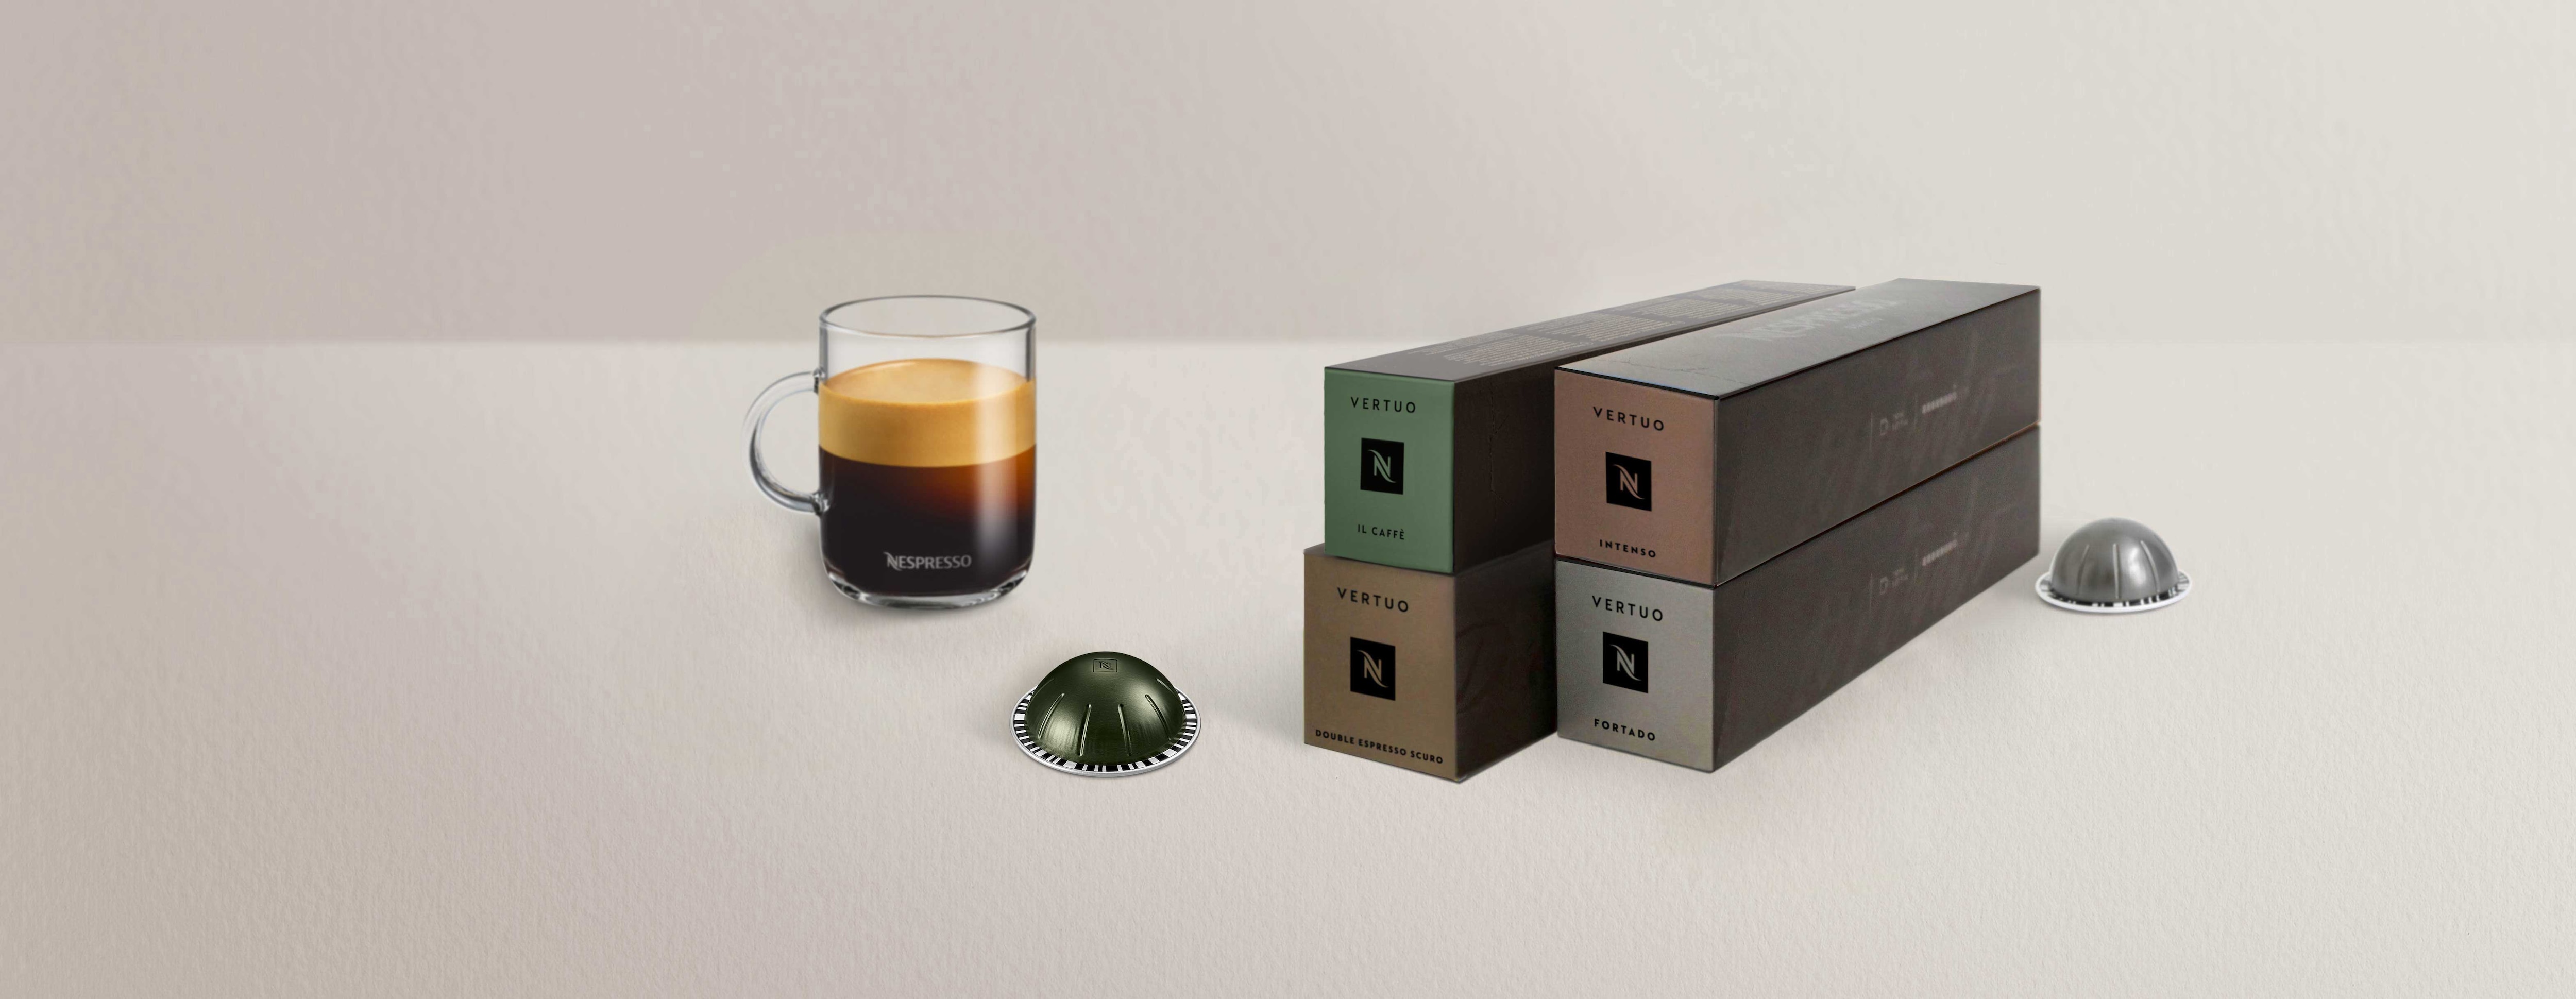 Nespresso Vertuo 40 Capsule Connoisseurs Pack